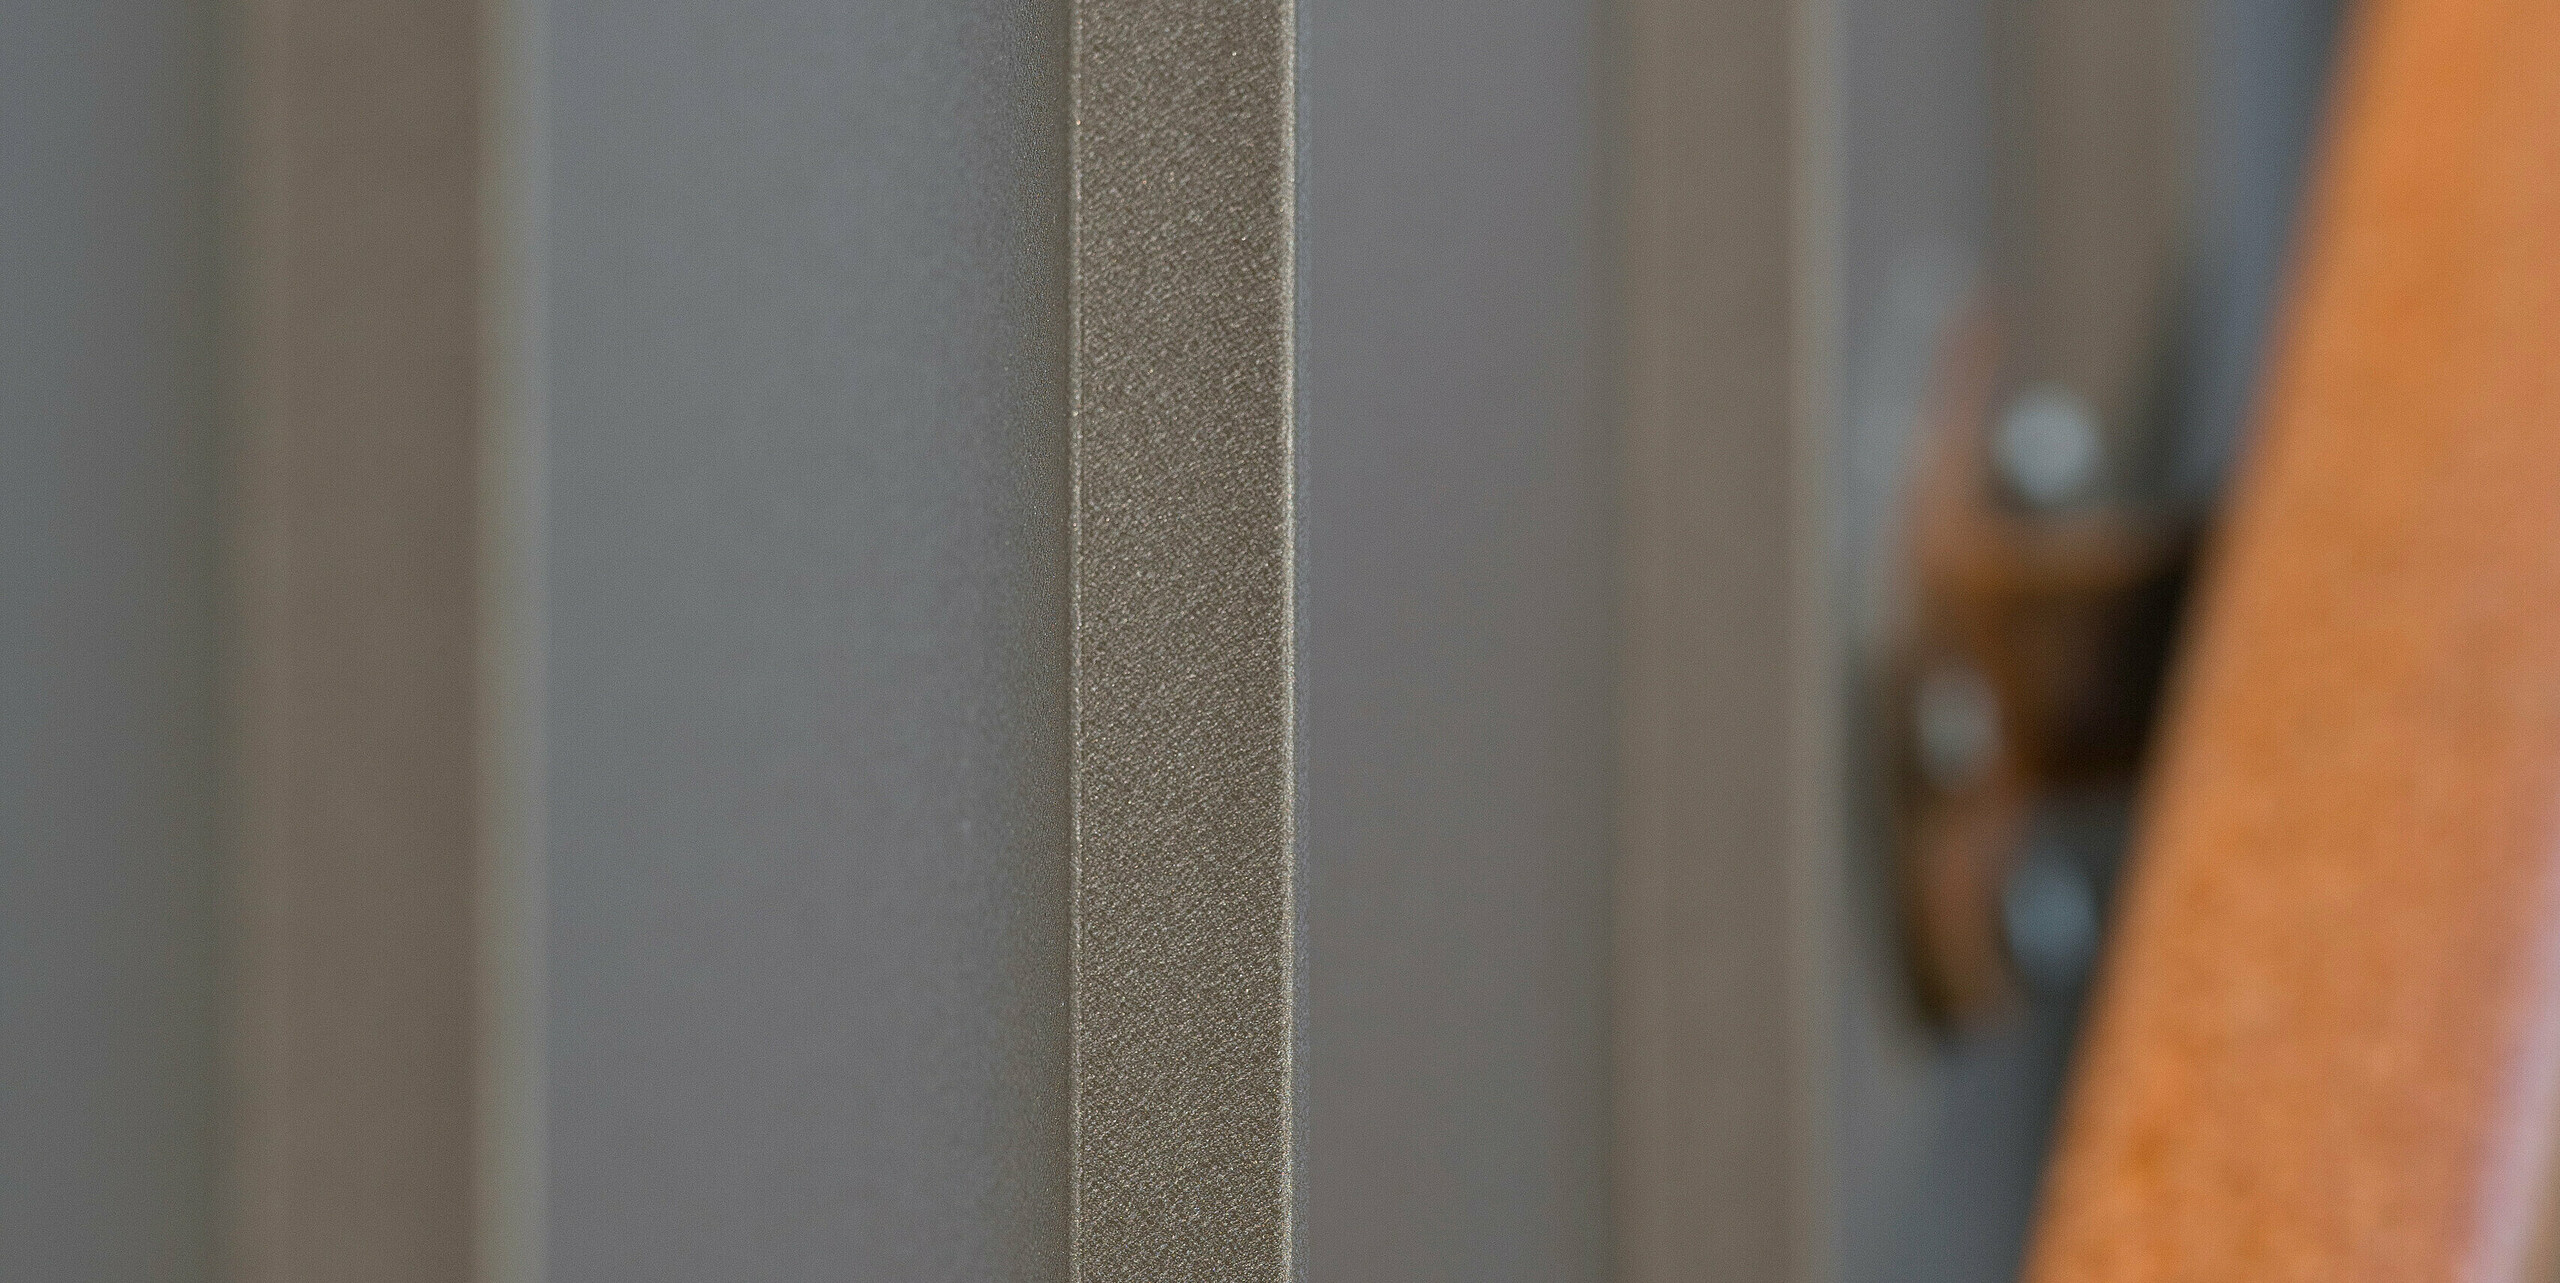 Gros plan d'une façade brun à joints debout posée en bacs verticaux. Le matériau provient de PREFA Aluminium Products GmbH. La texture visible de l'aluminium transmet qualité et robustesse. L'accent mis sur le matériau montre en détail sa texture et ses nuances de couleurs. Une partie floue d'une main courante métallique de couleur rouille complète l'image de droite, créant un contraste par la couleur et la texture.